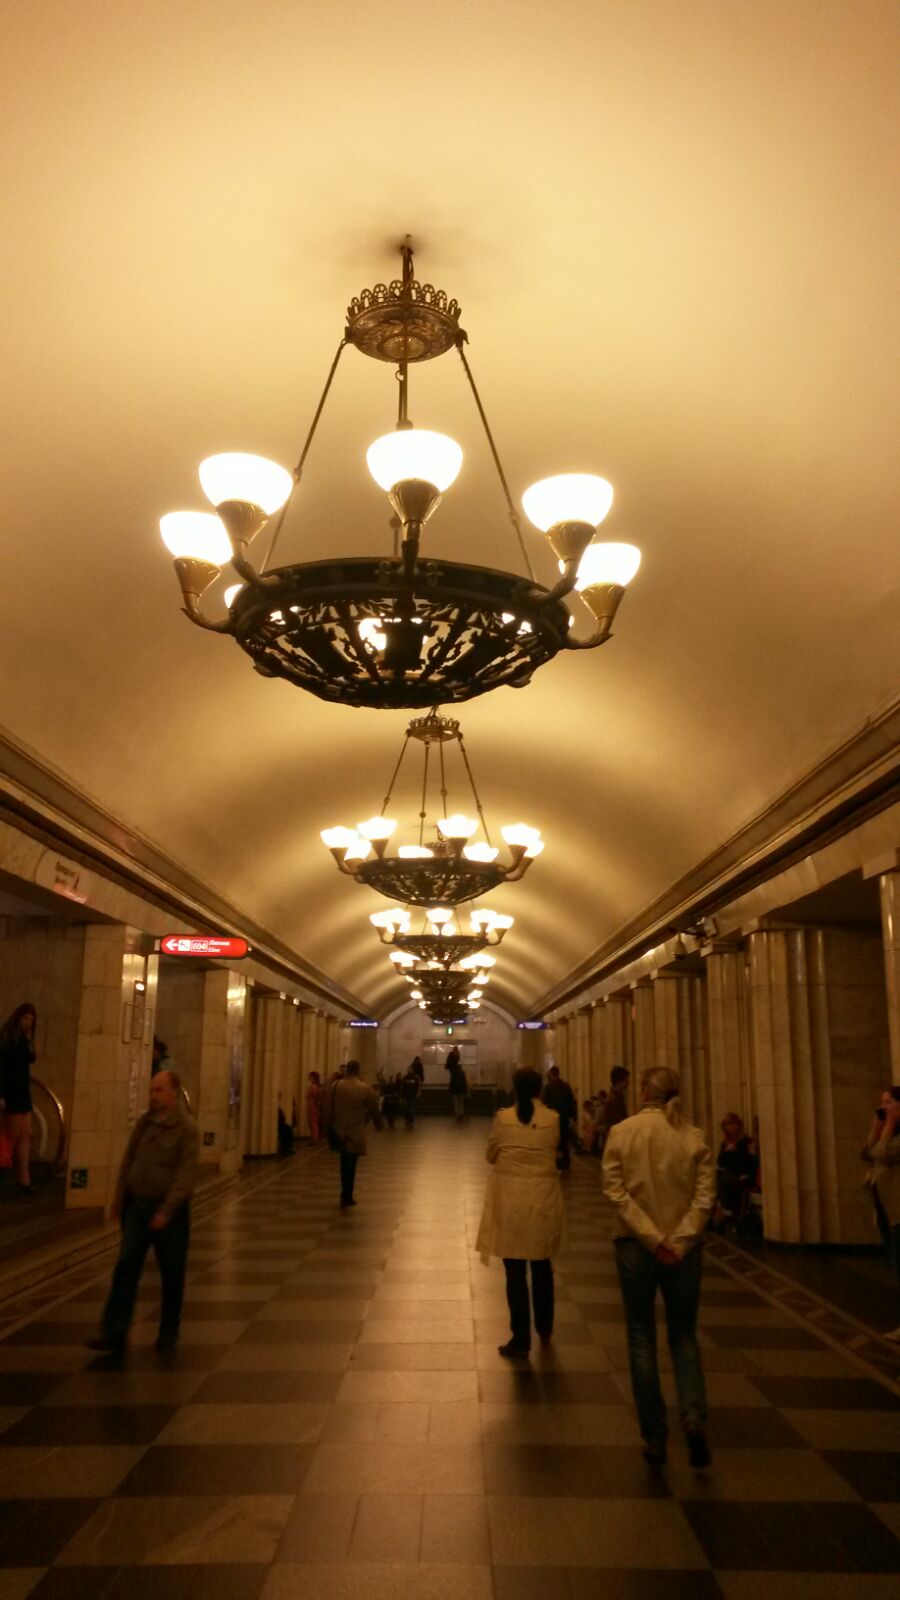 Unglaublich schöne Metrostationen in der prachtvollen russischen Stadt St. Petersburg